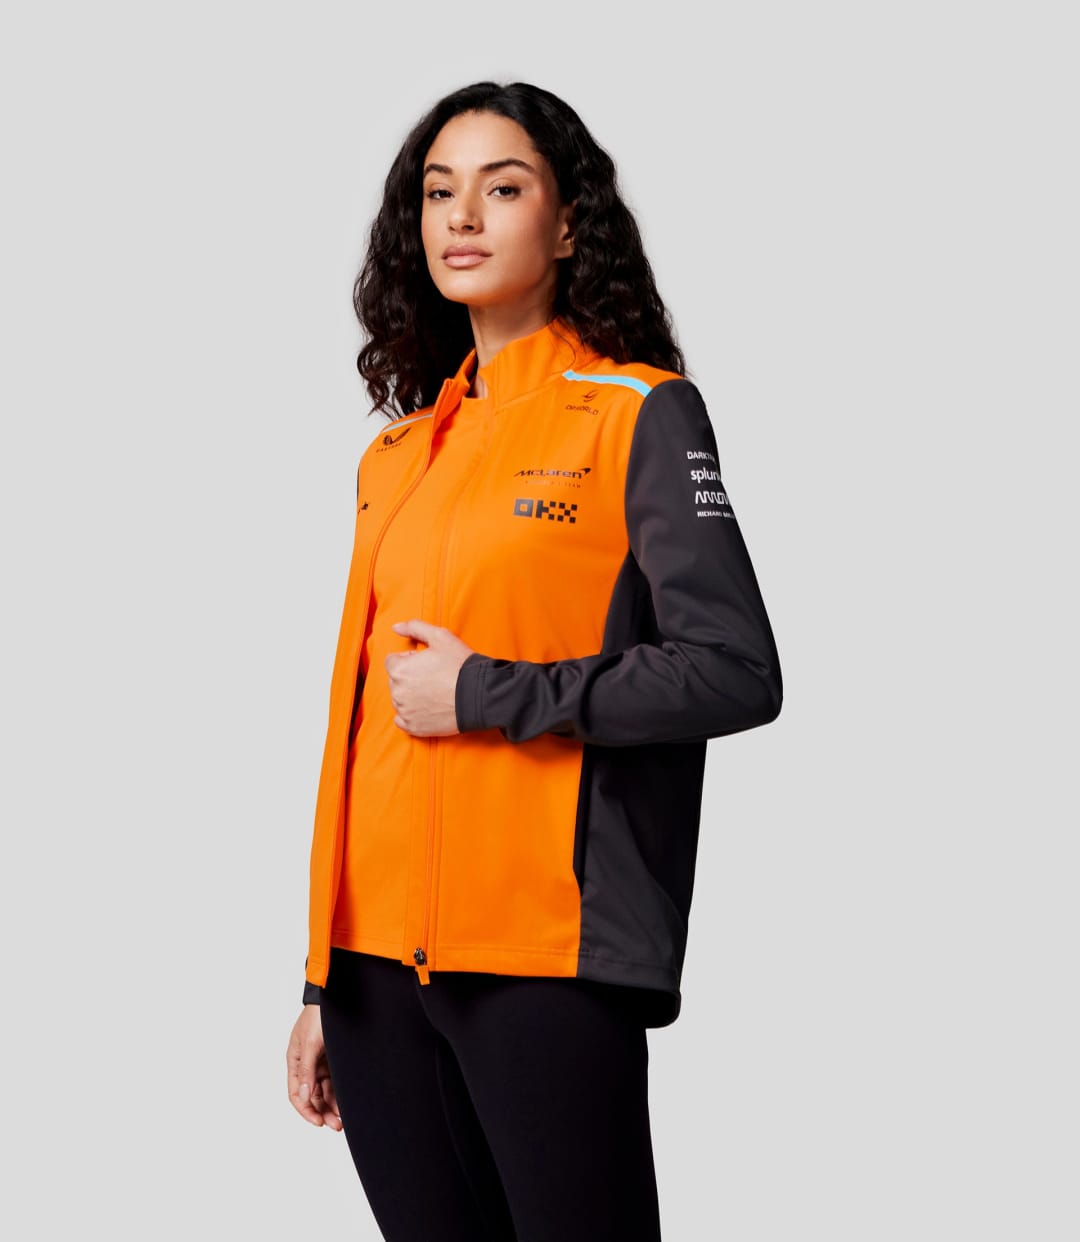 McLaren F1 2024 Women's Team Softshell Jacket